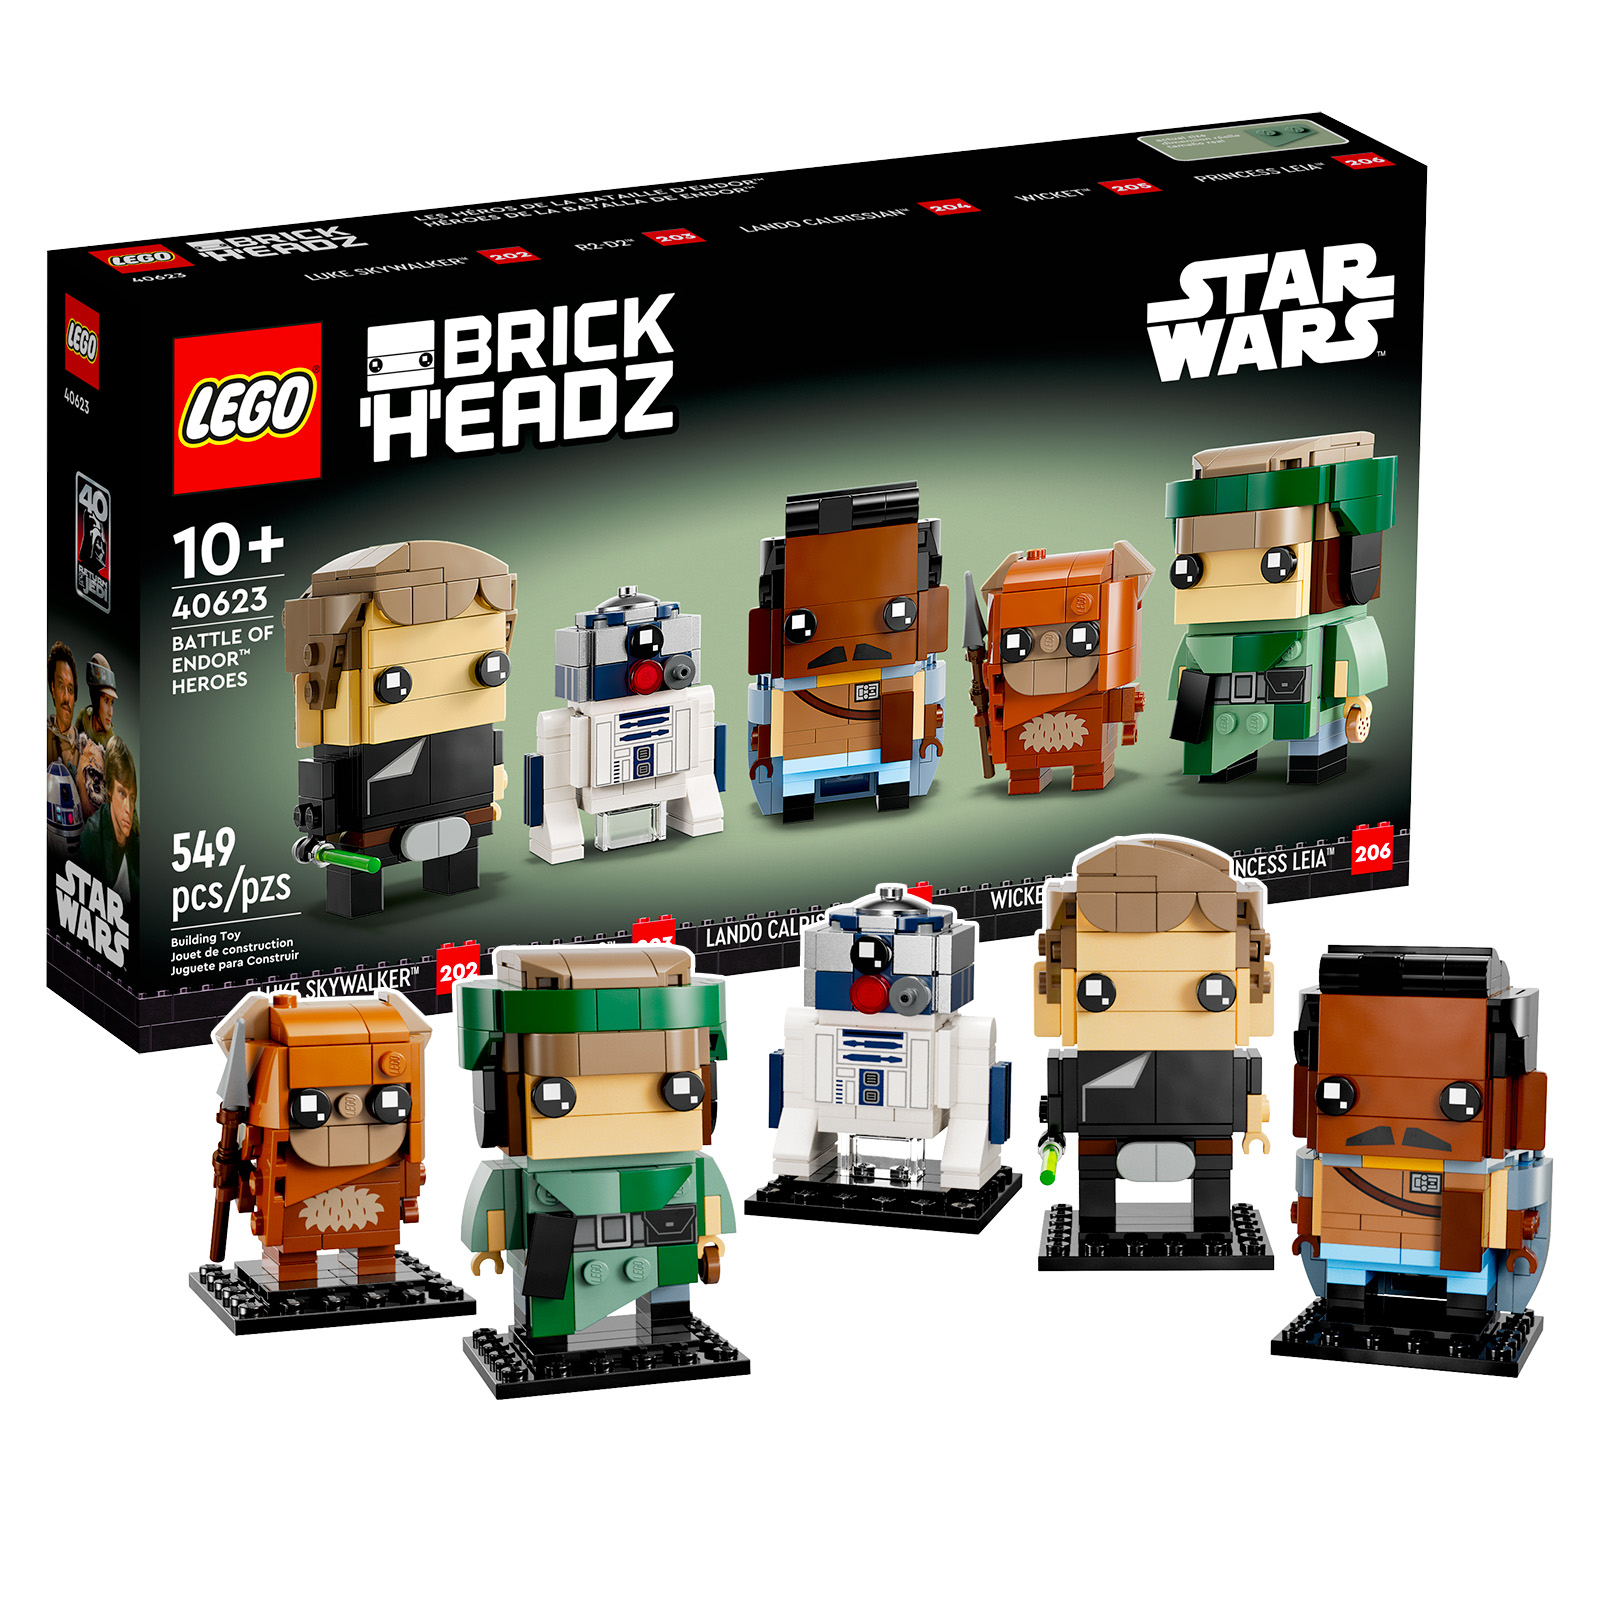 LEGO Star Wars BrickHeadz 40623 Battle of Endor Heroes : les visuels officiels sont disponibles